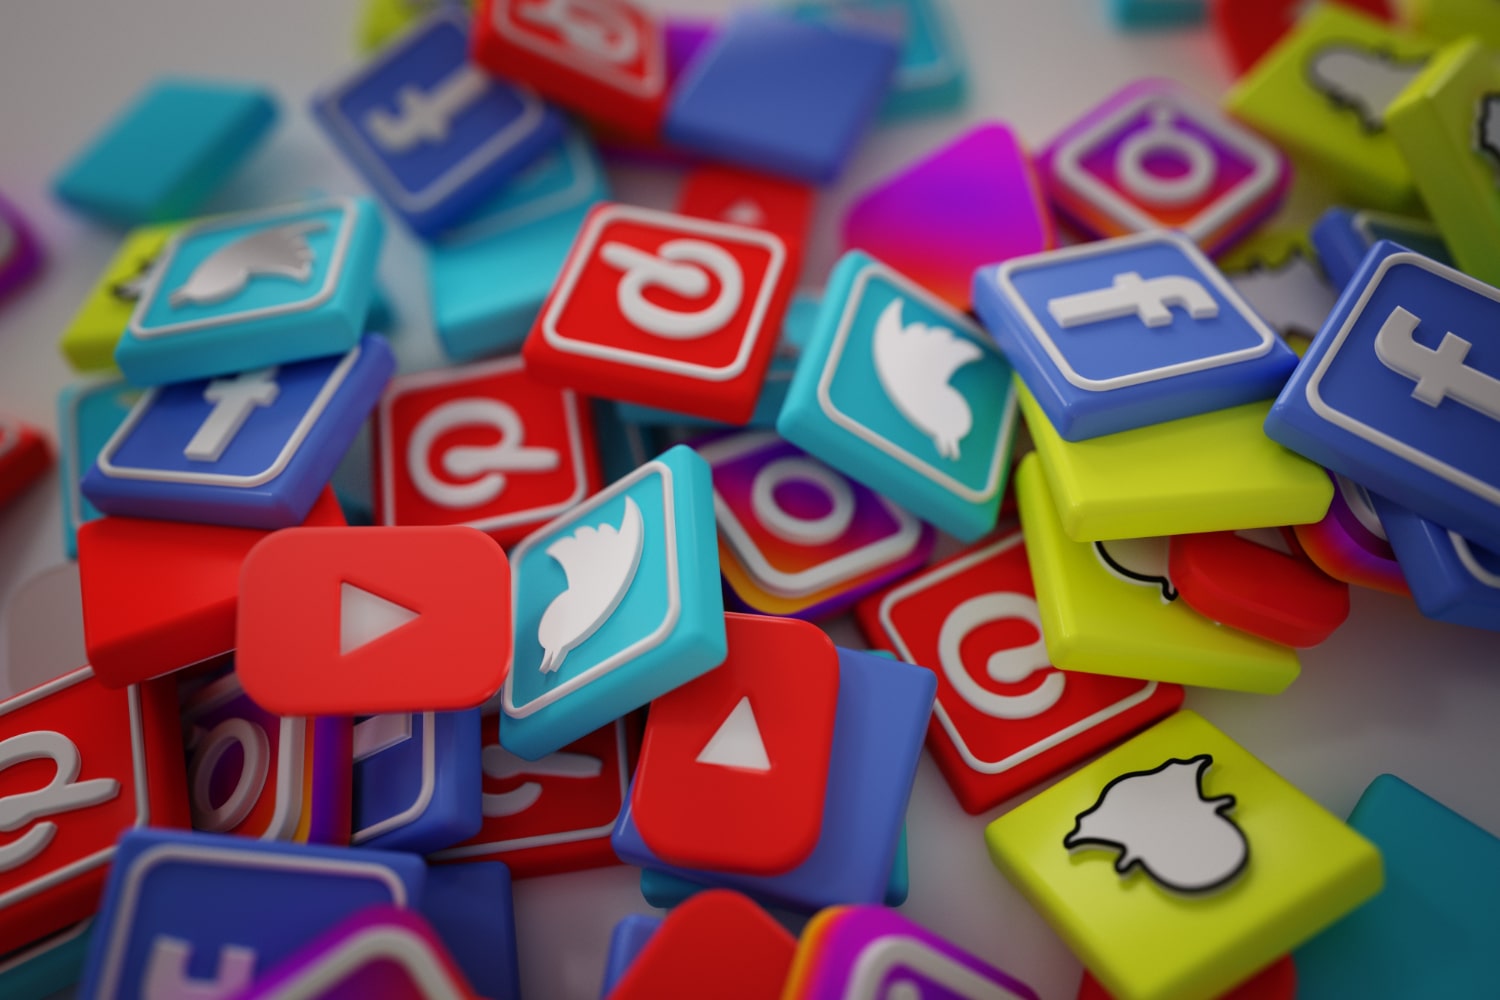 Social-Media-Platforms